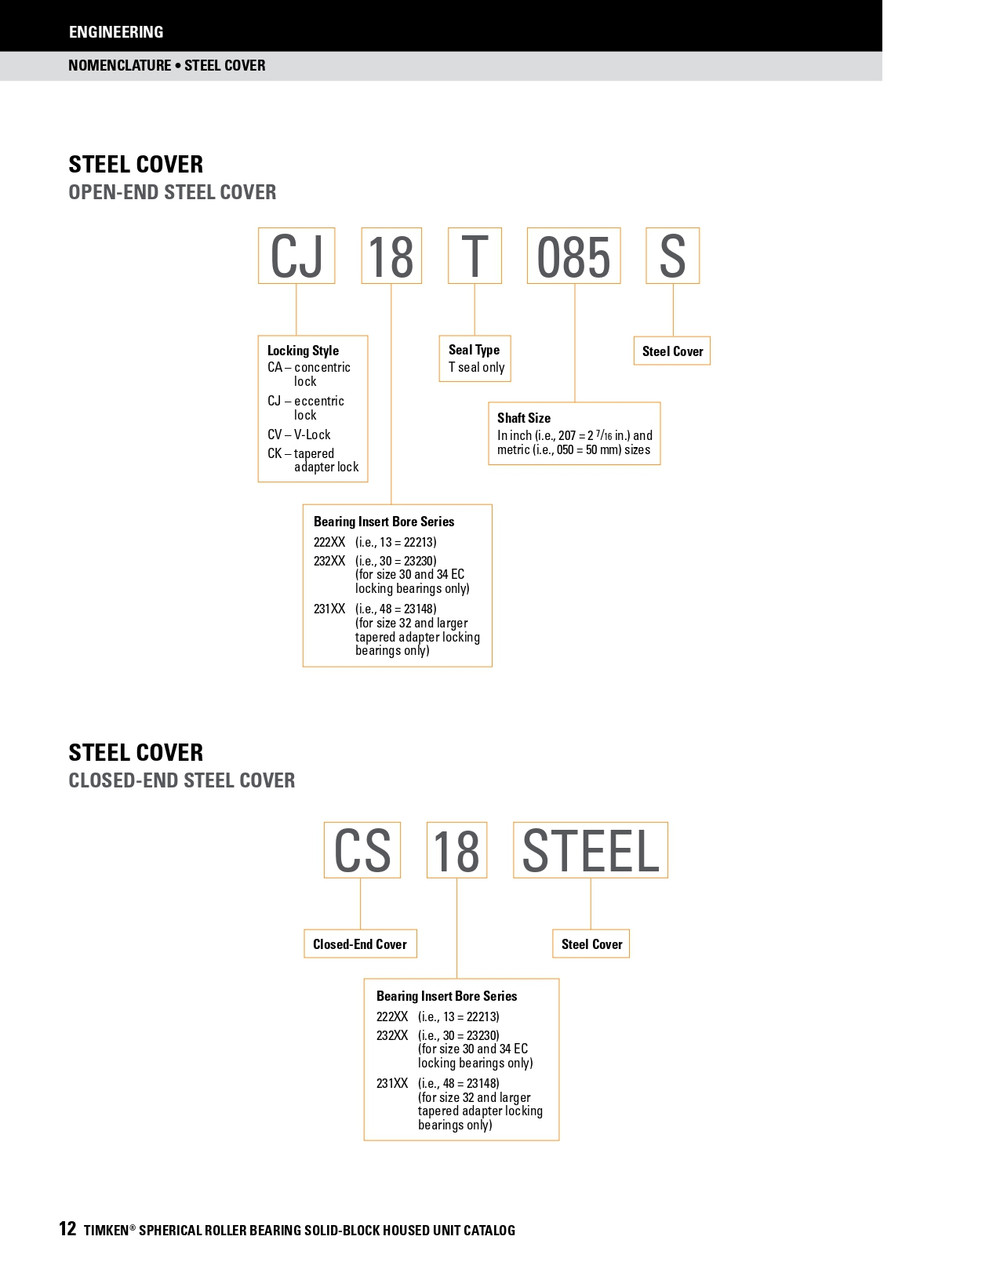 2-3/16" Timken SRB Steel Open End Cover w/Teflon Seal - TA/DV Taper Lock Bushing Type  CK13T203S